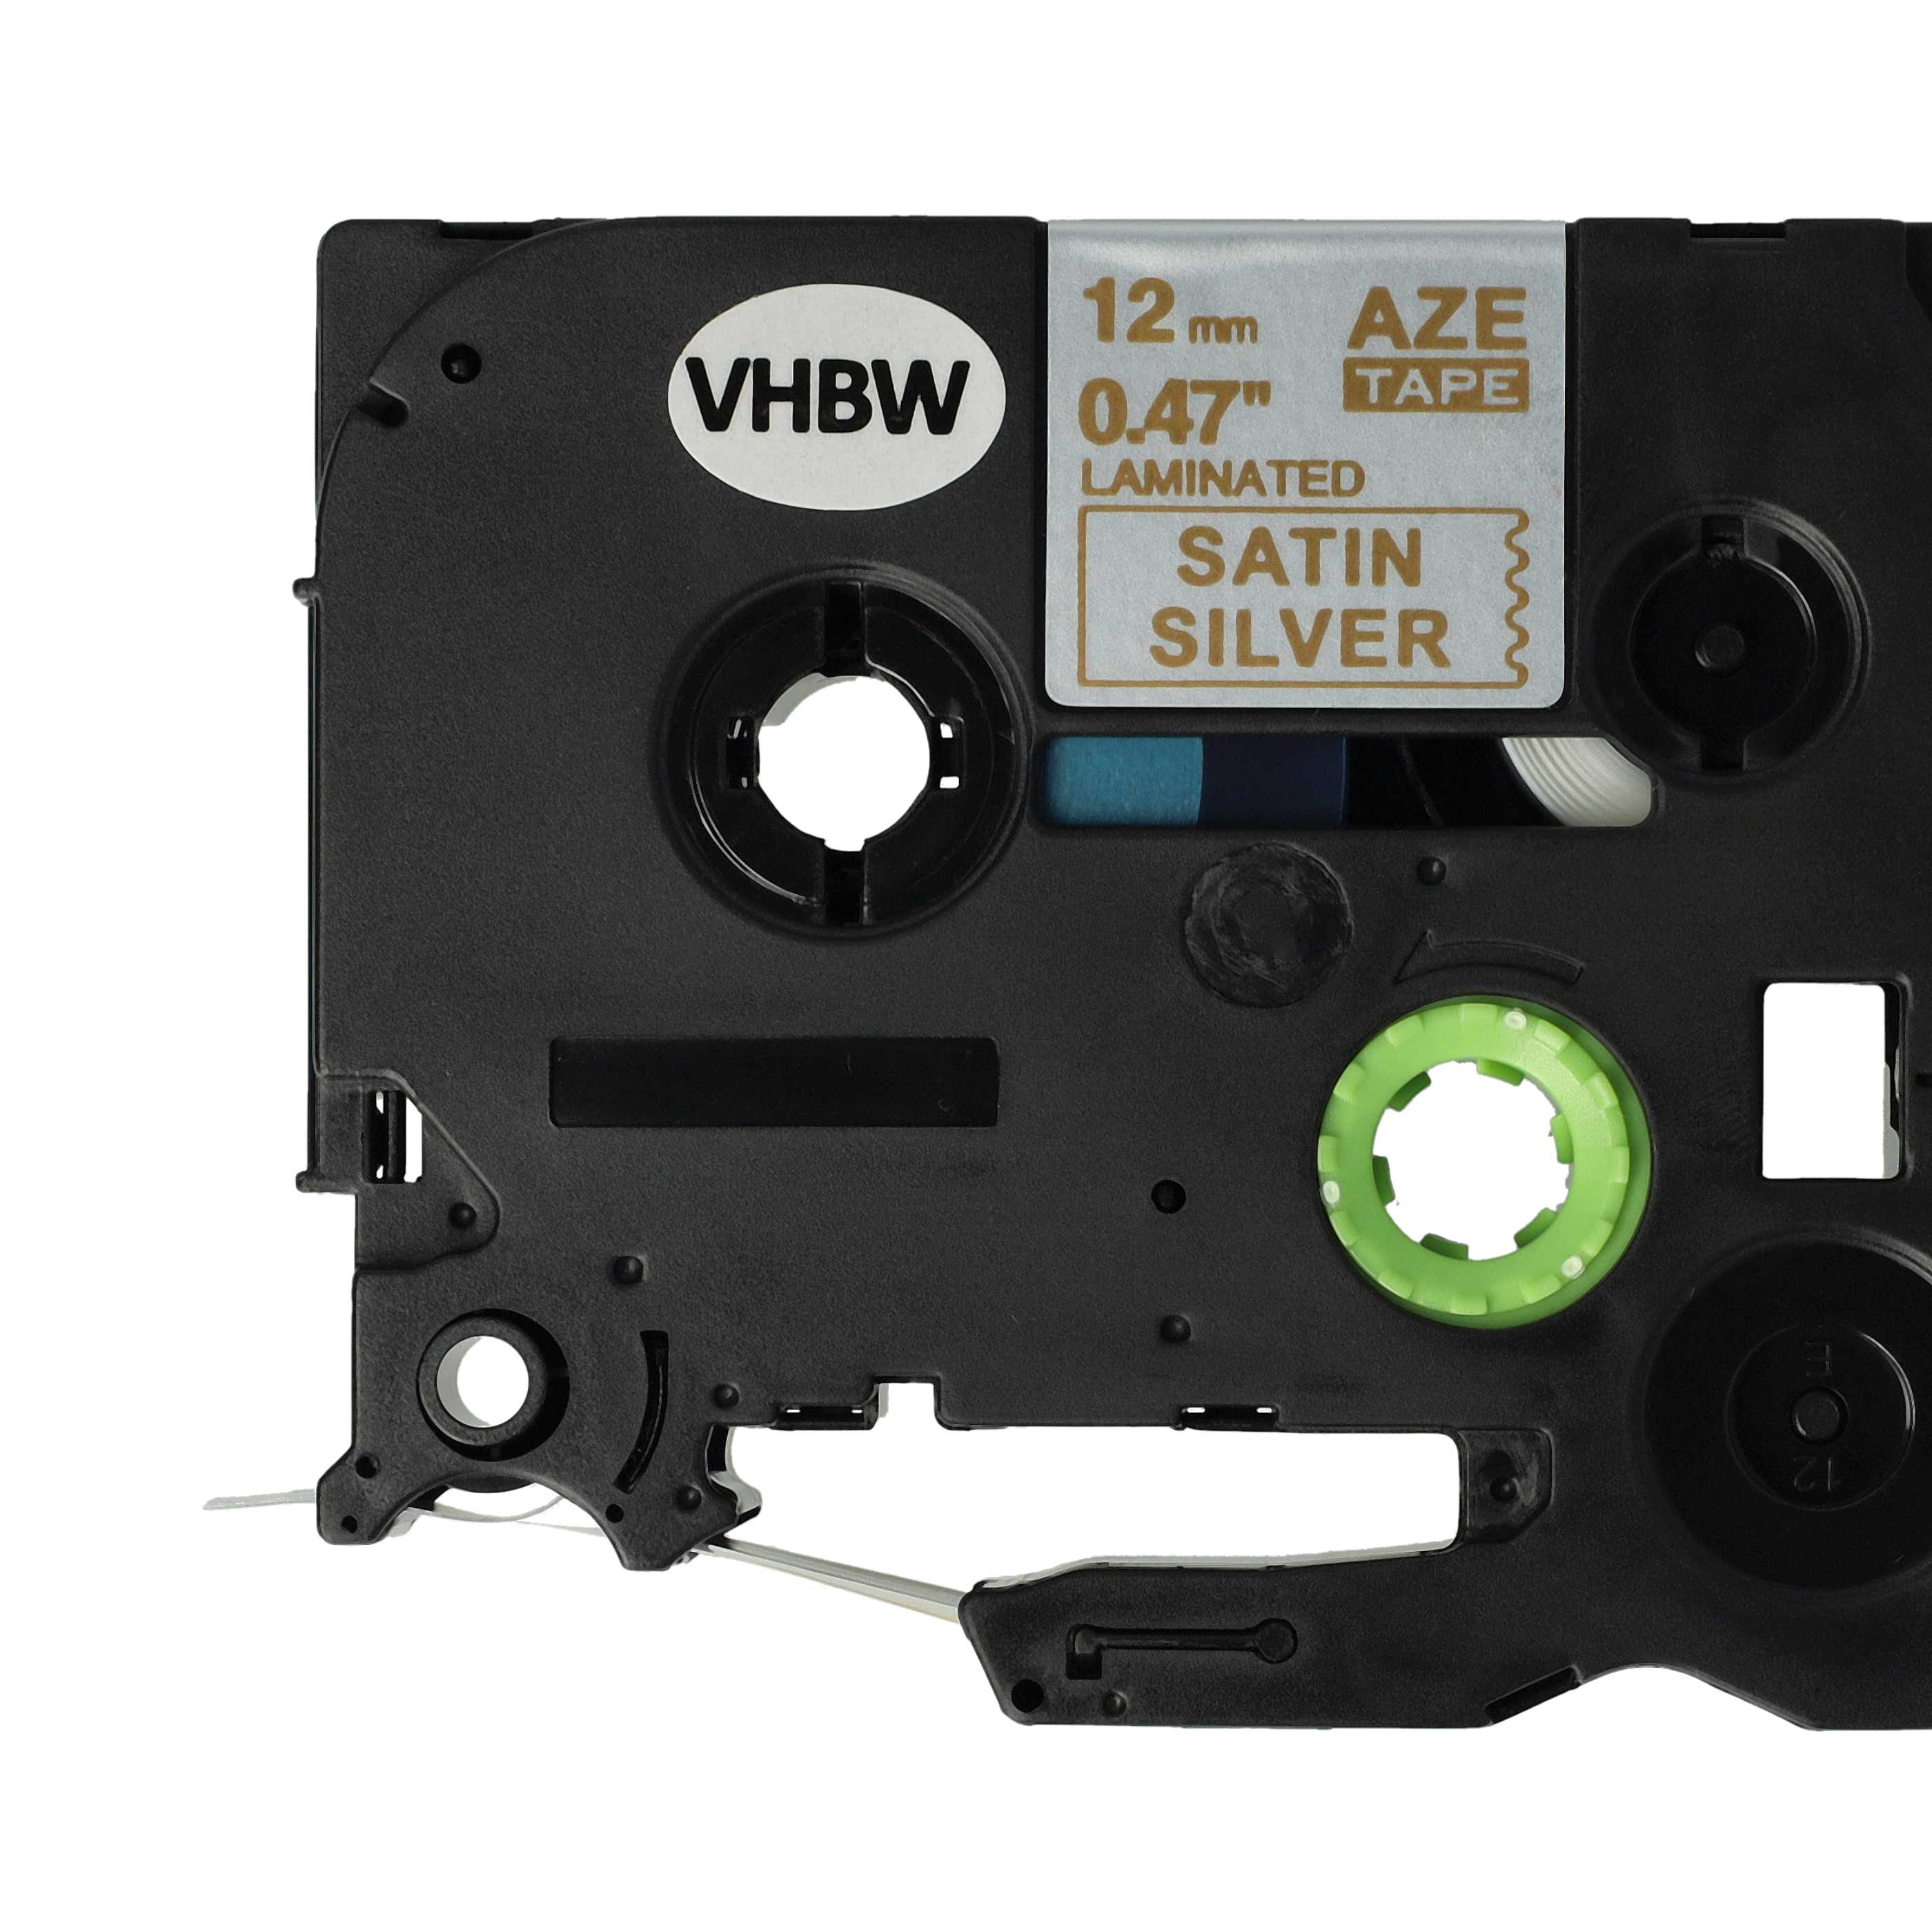 Cassette à ruban remplace Brother TZ-MQ934, TZE-MQ934 - 12mm lettrage Or ruban Argent satiné